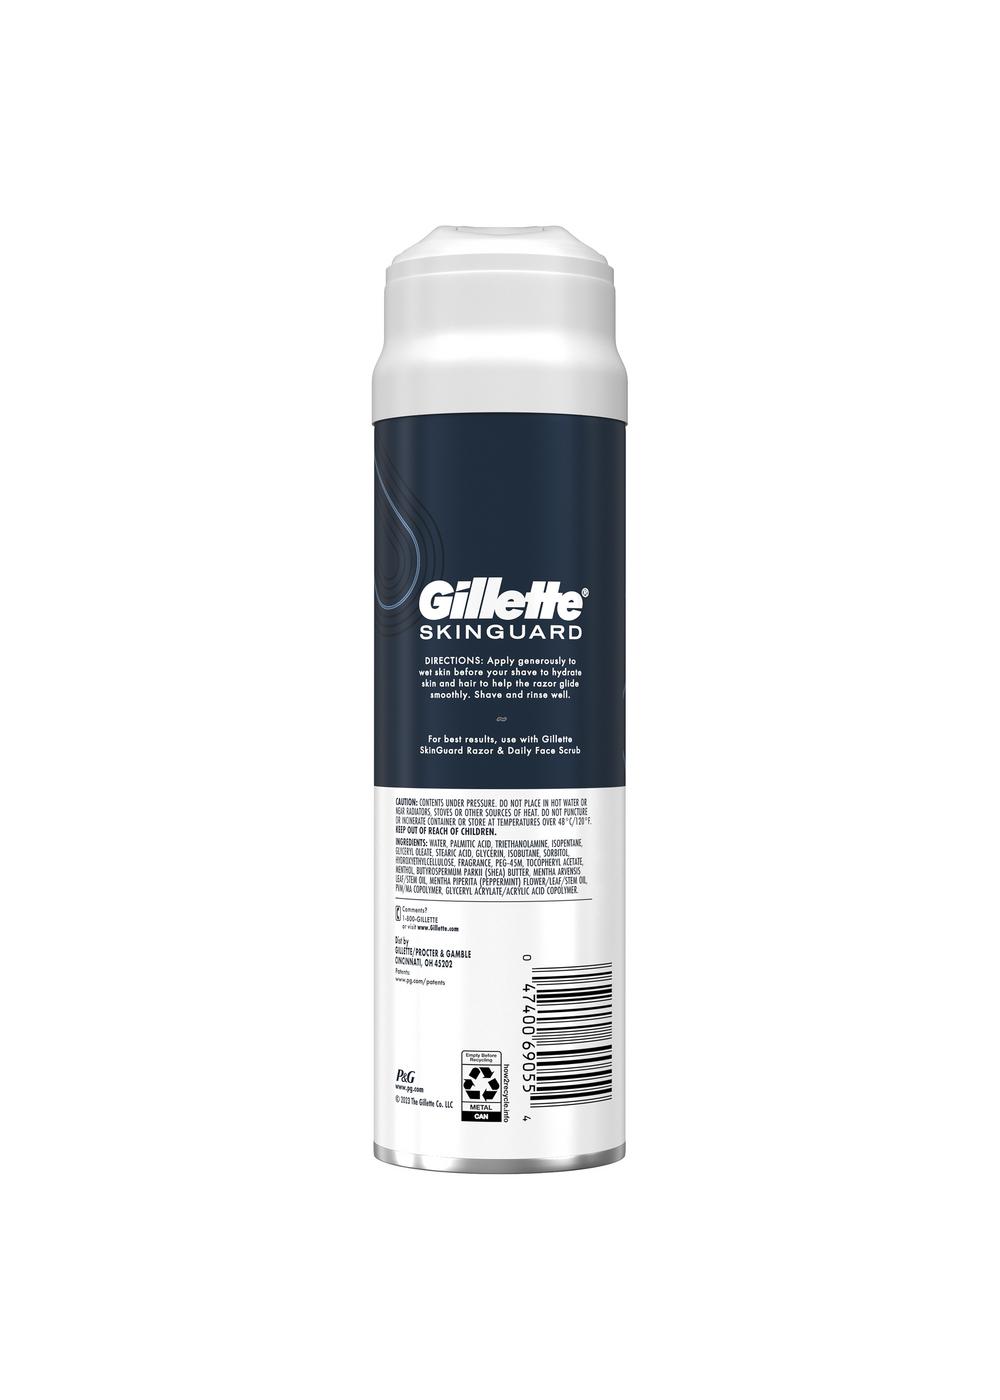 Gillette Skinguard Skin Protect Shave Gel; image 2 of 2